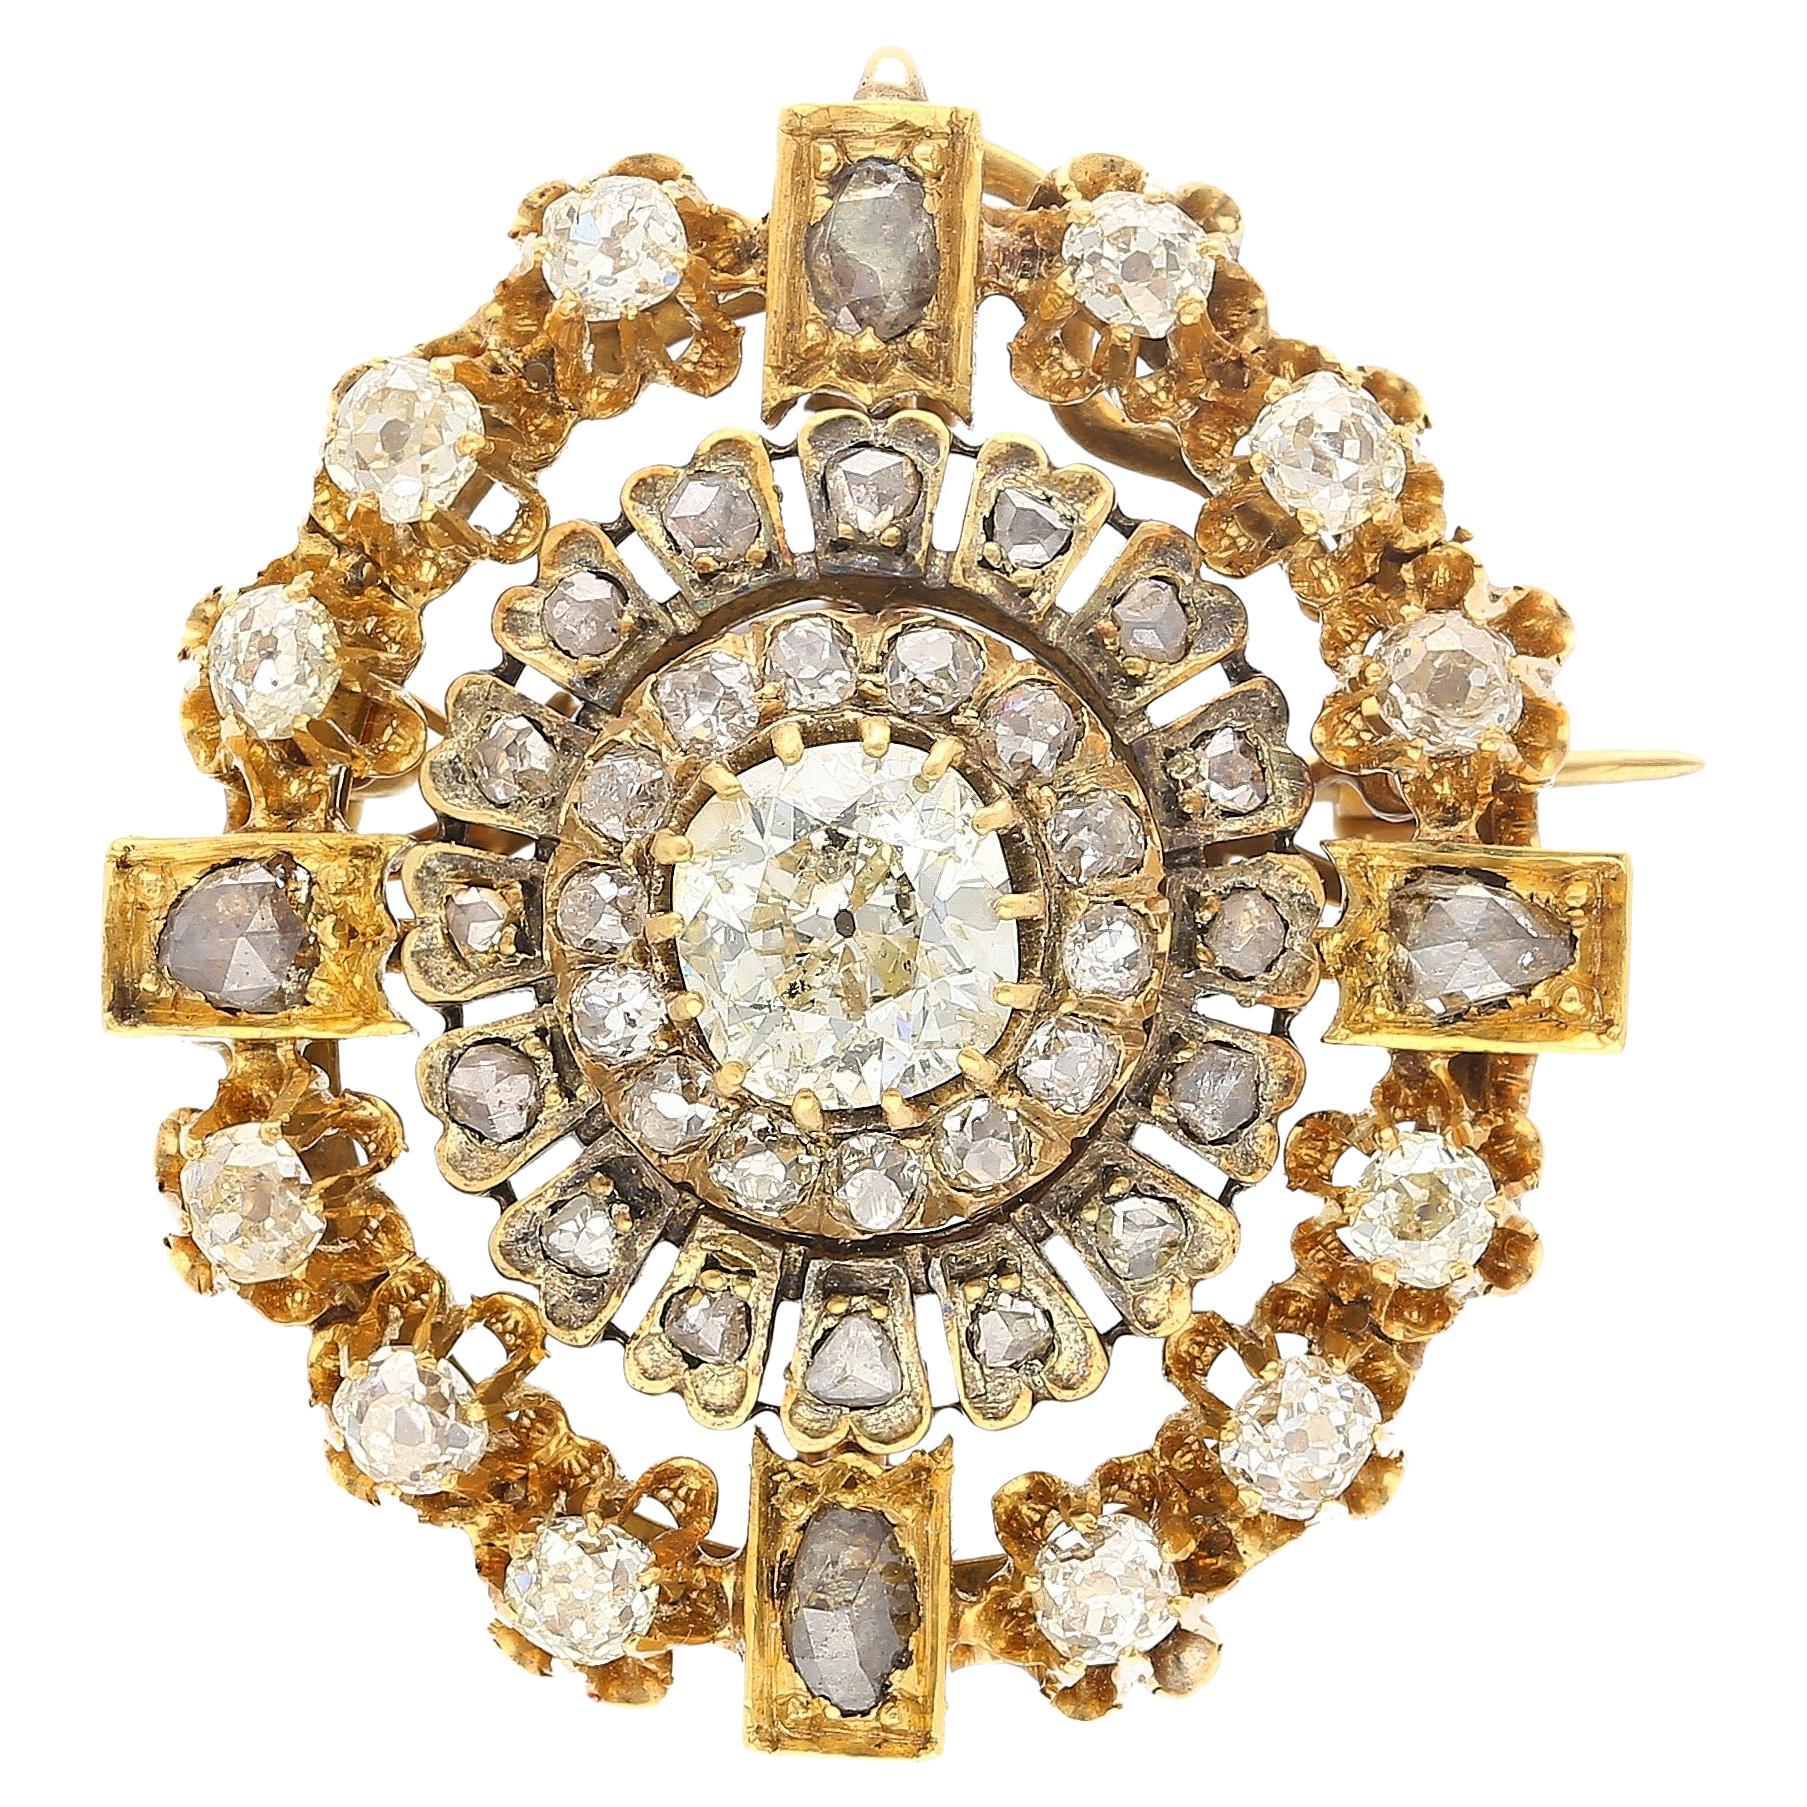 Broche victorienne antique de la fin des années 1800, 6,72 carats de diamants anciens taillés en Europe.